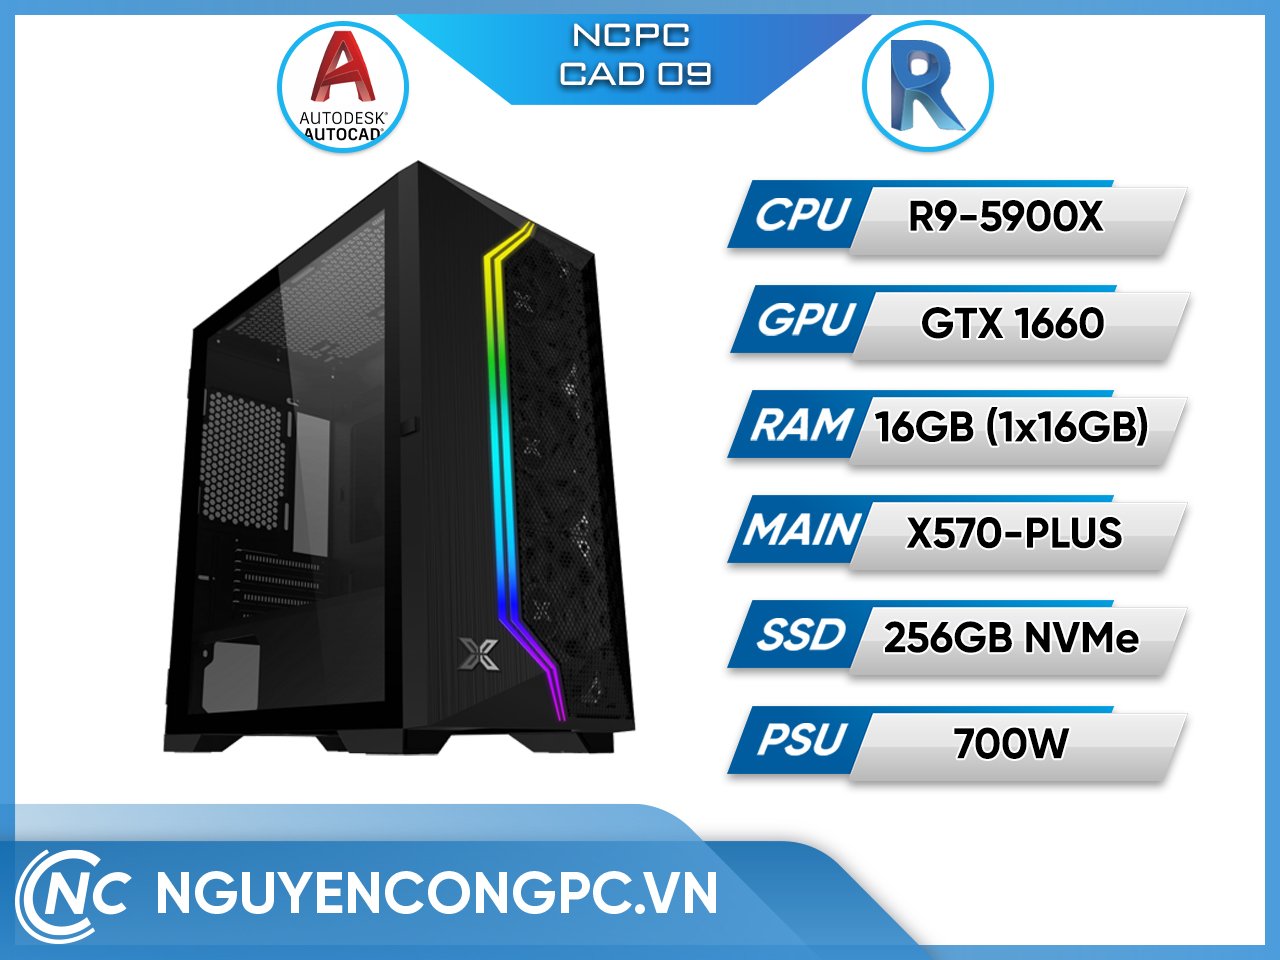 NCPC CAD 09 (Ryzen 9 5900X/ X570 Wifi/ RAM 16GB/ 256GB SSD/ GTX 1660 Ti/ 650W)